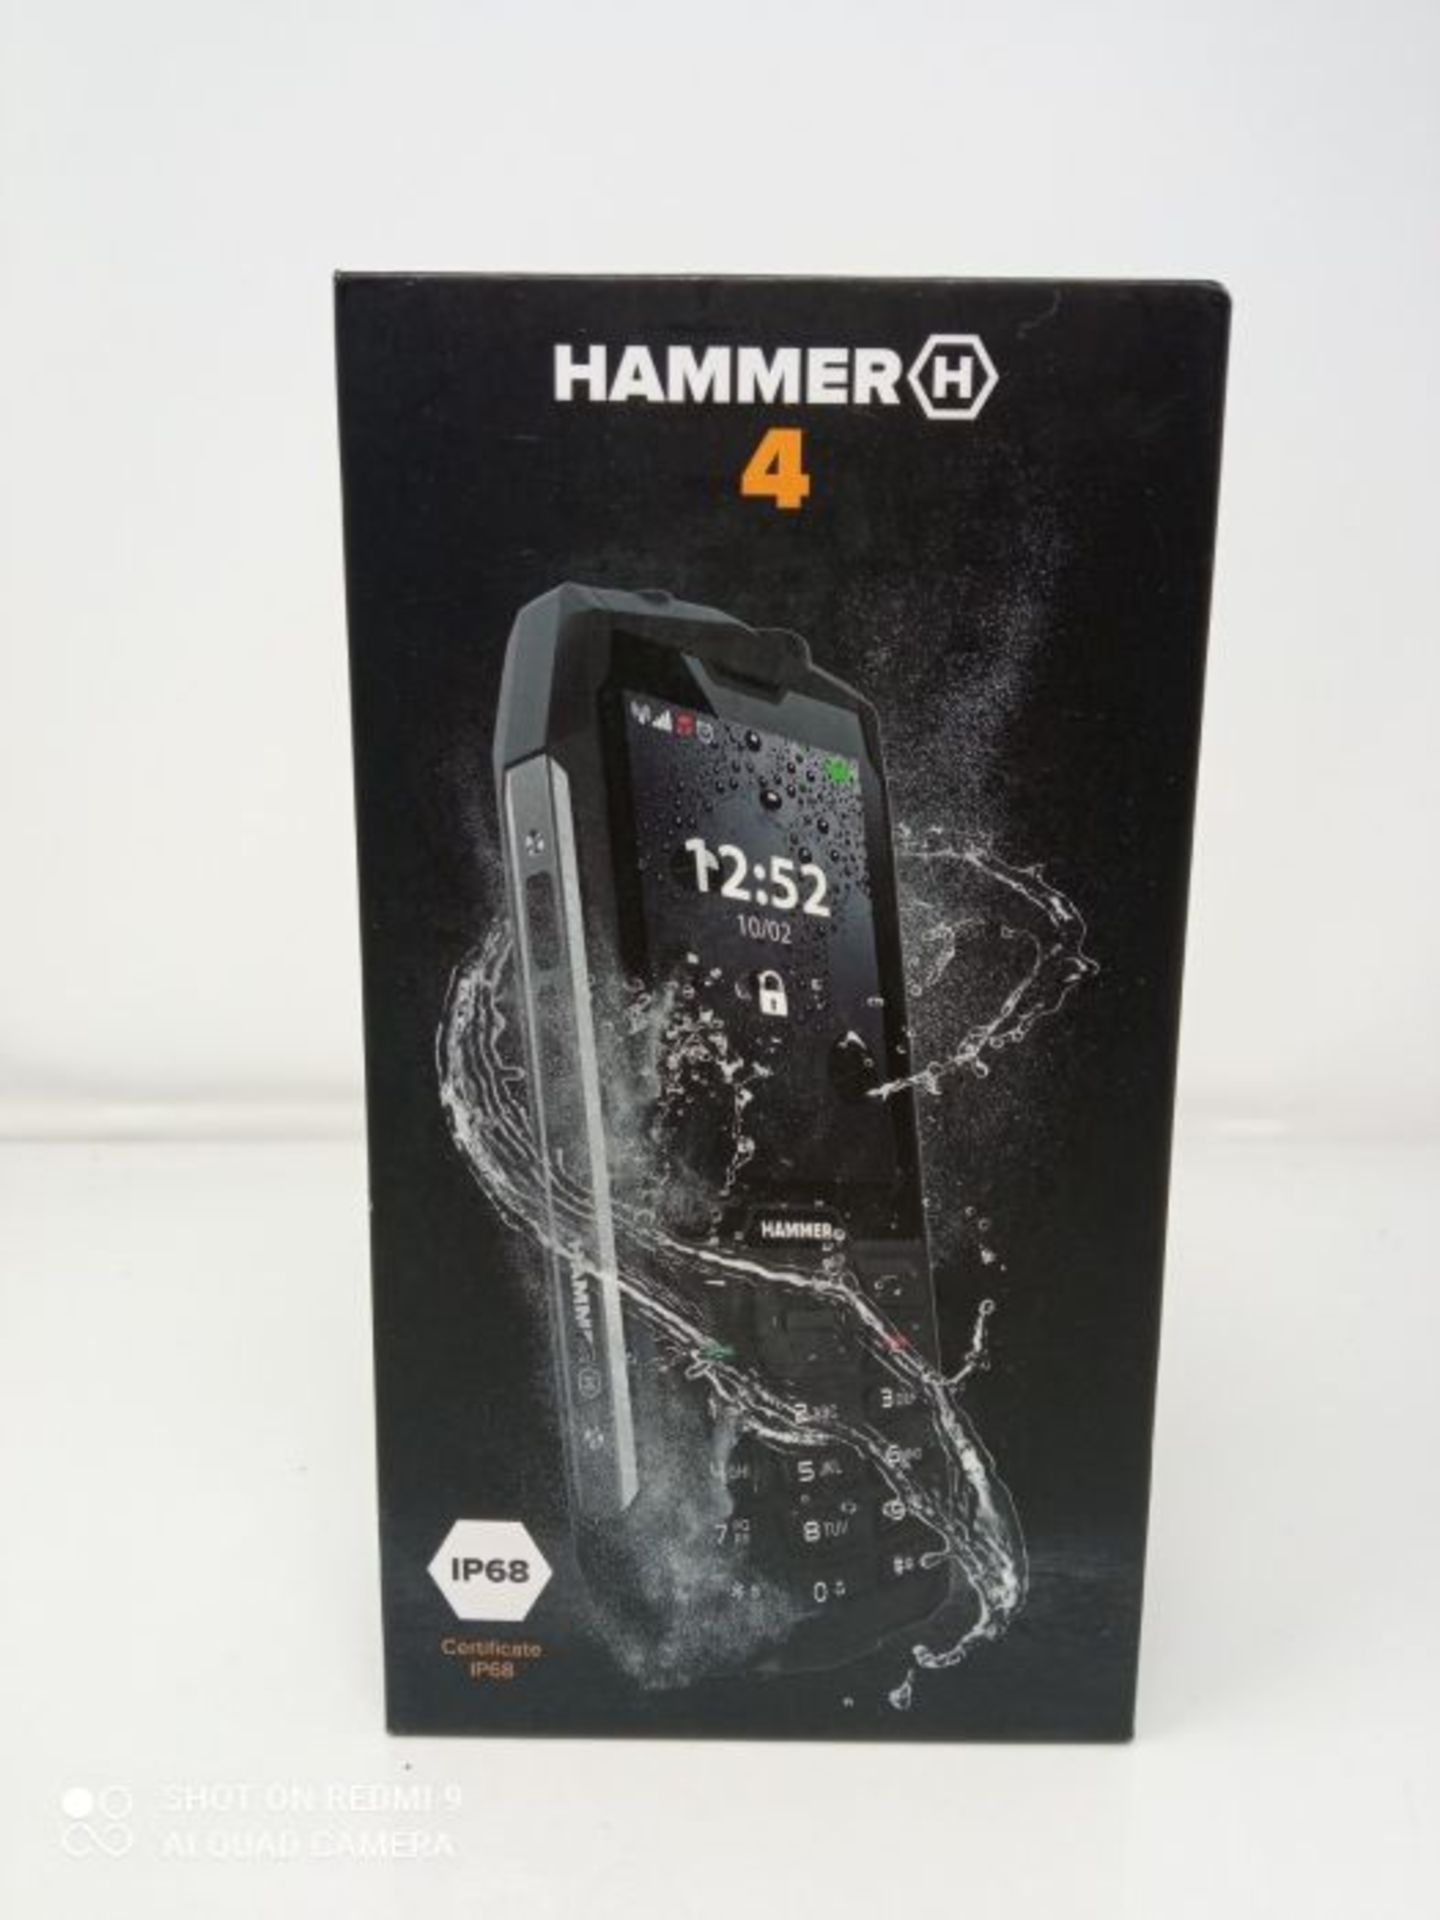 RRP £59.00 Hammer H 4 TÃ©lephone Portable Incassable DebloquÃ© IP68 RÃ©sistant Etanche Anti - Image 2 of 3